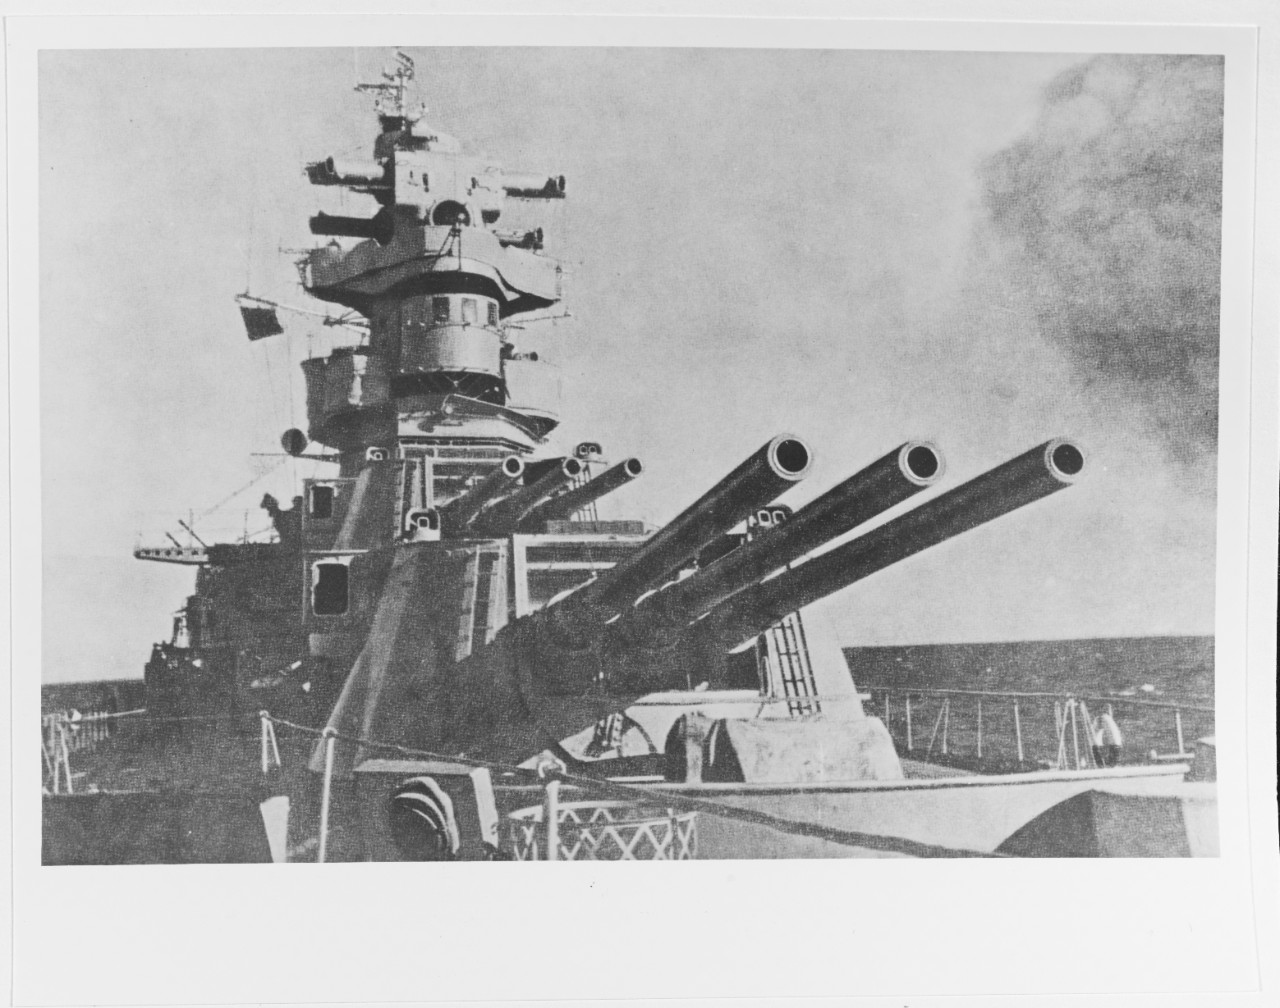 KALININ (Soviet heavy cruiser, 1943-circa 1965)